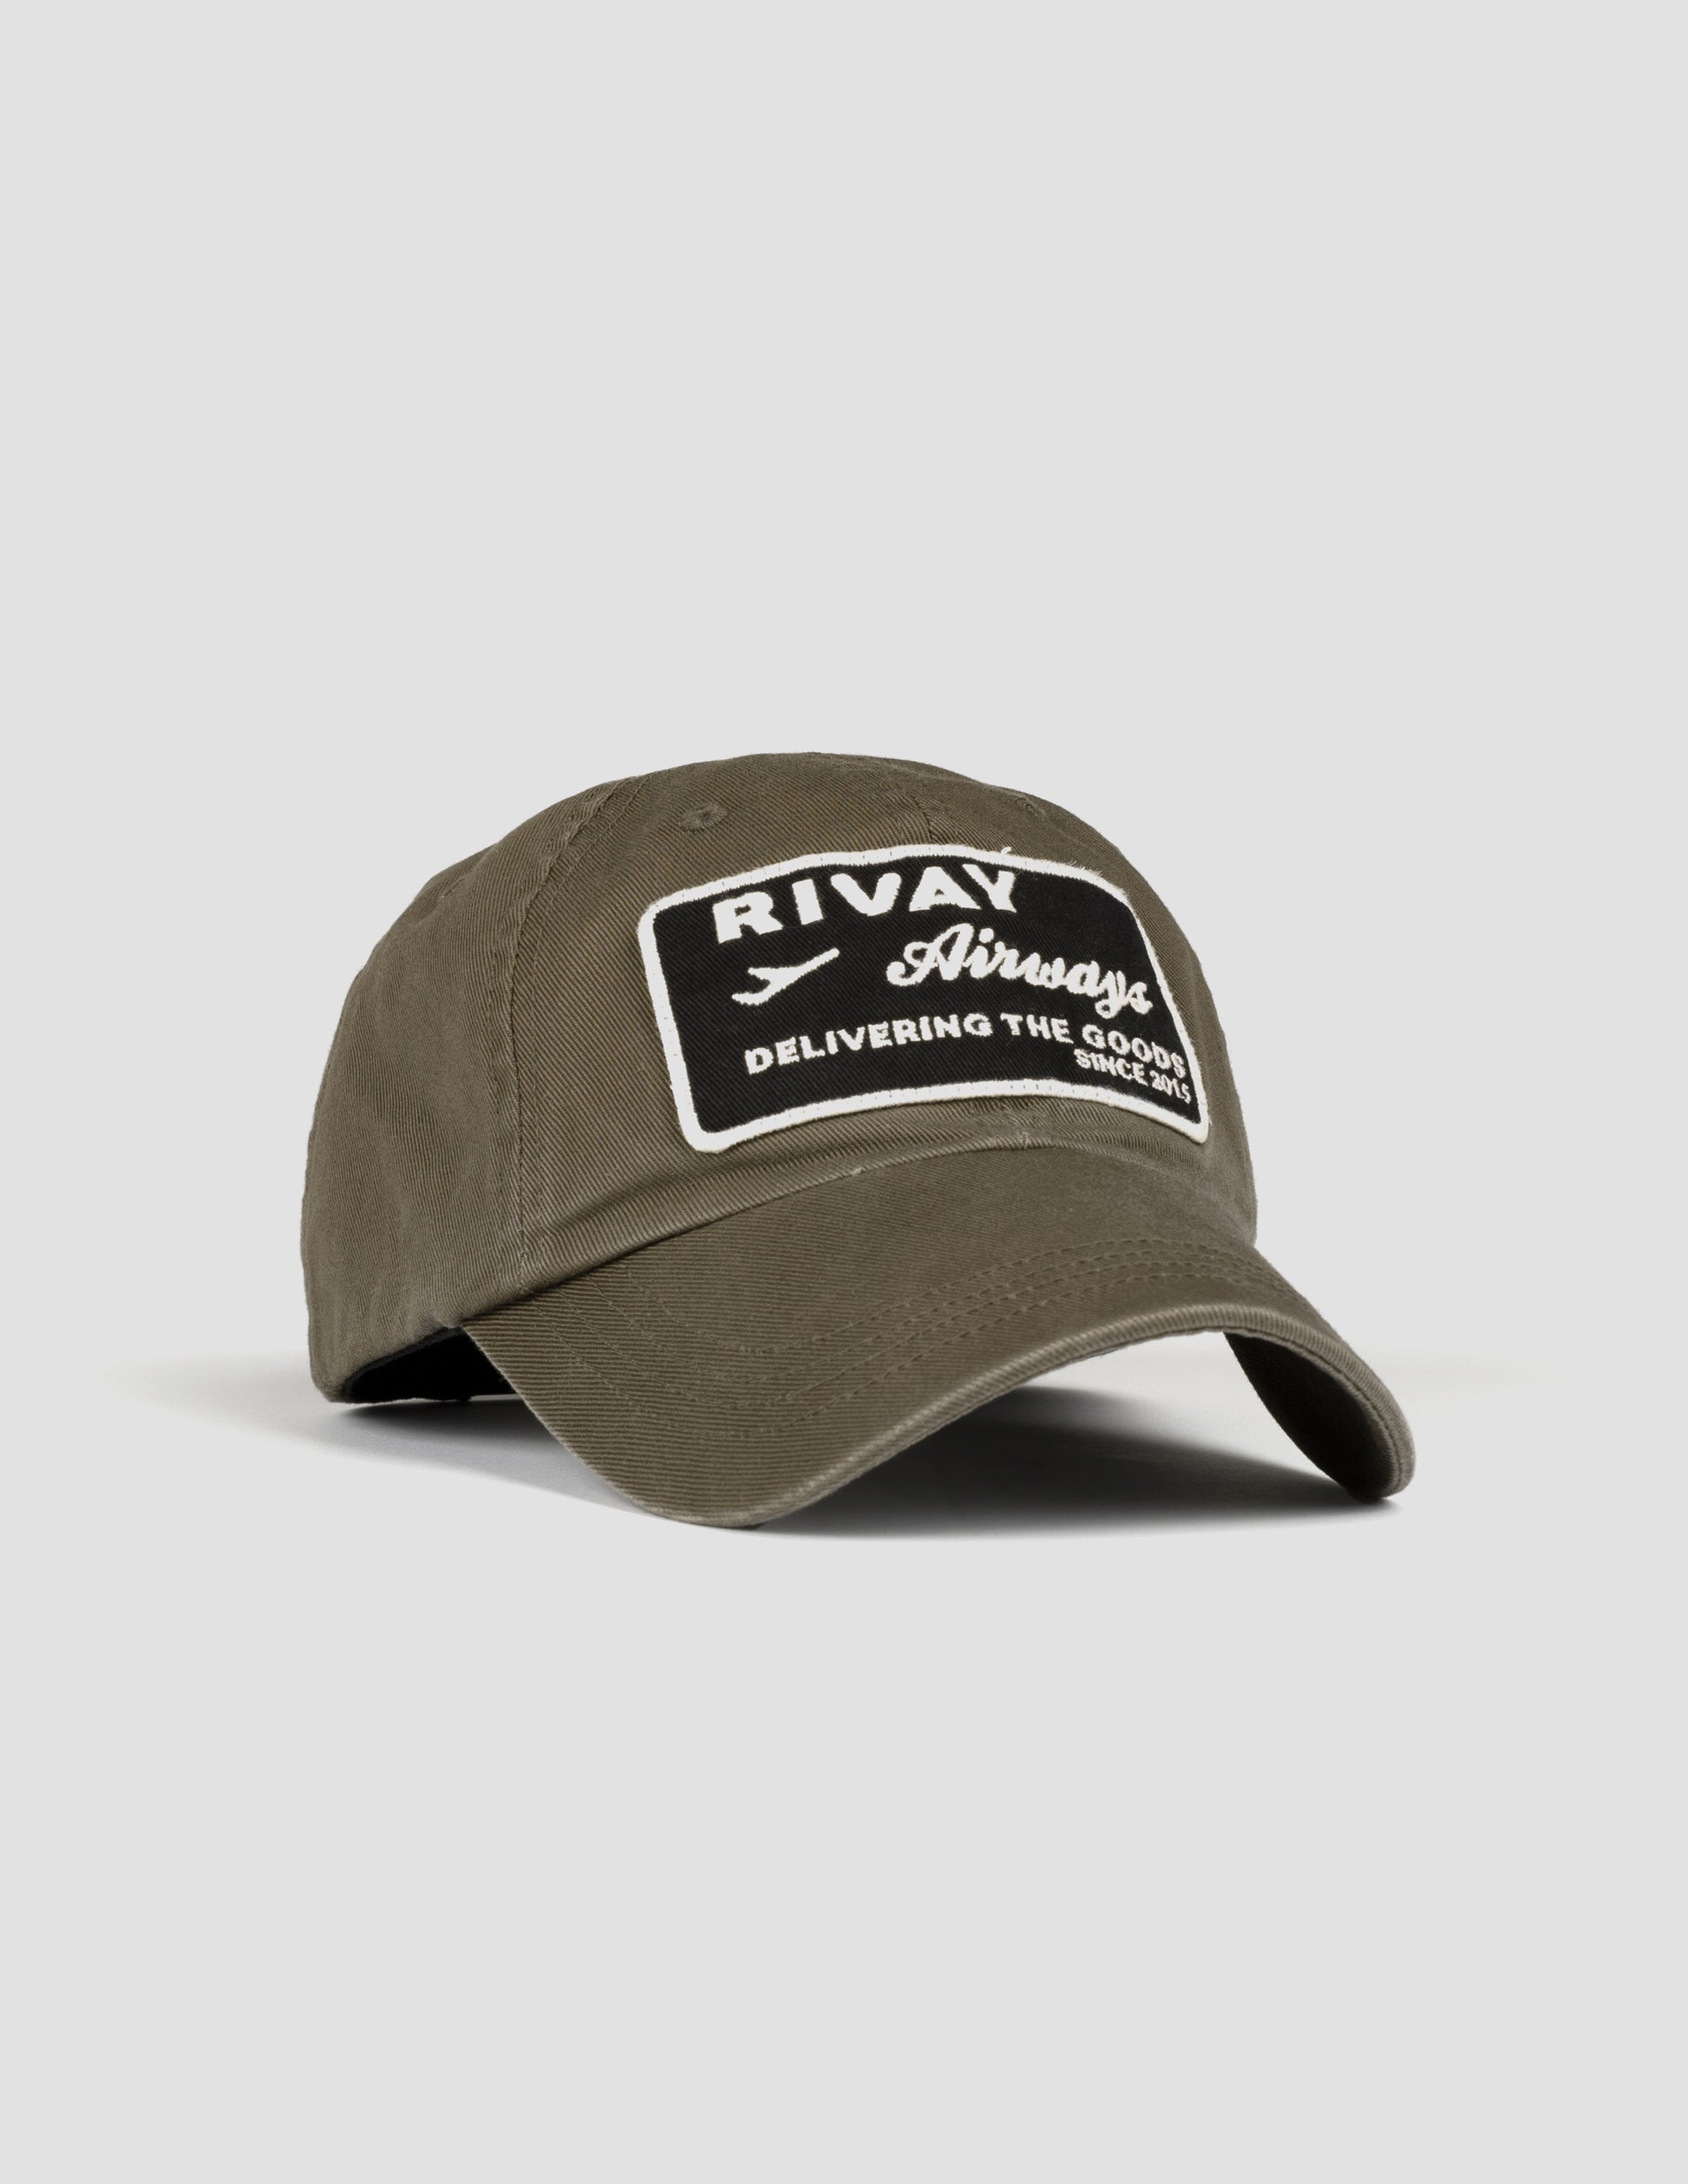 Rivay Airways Hat in Jalepeño